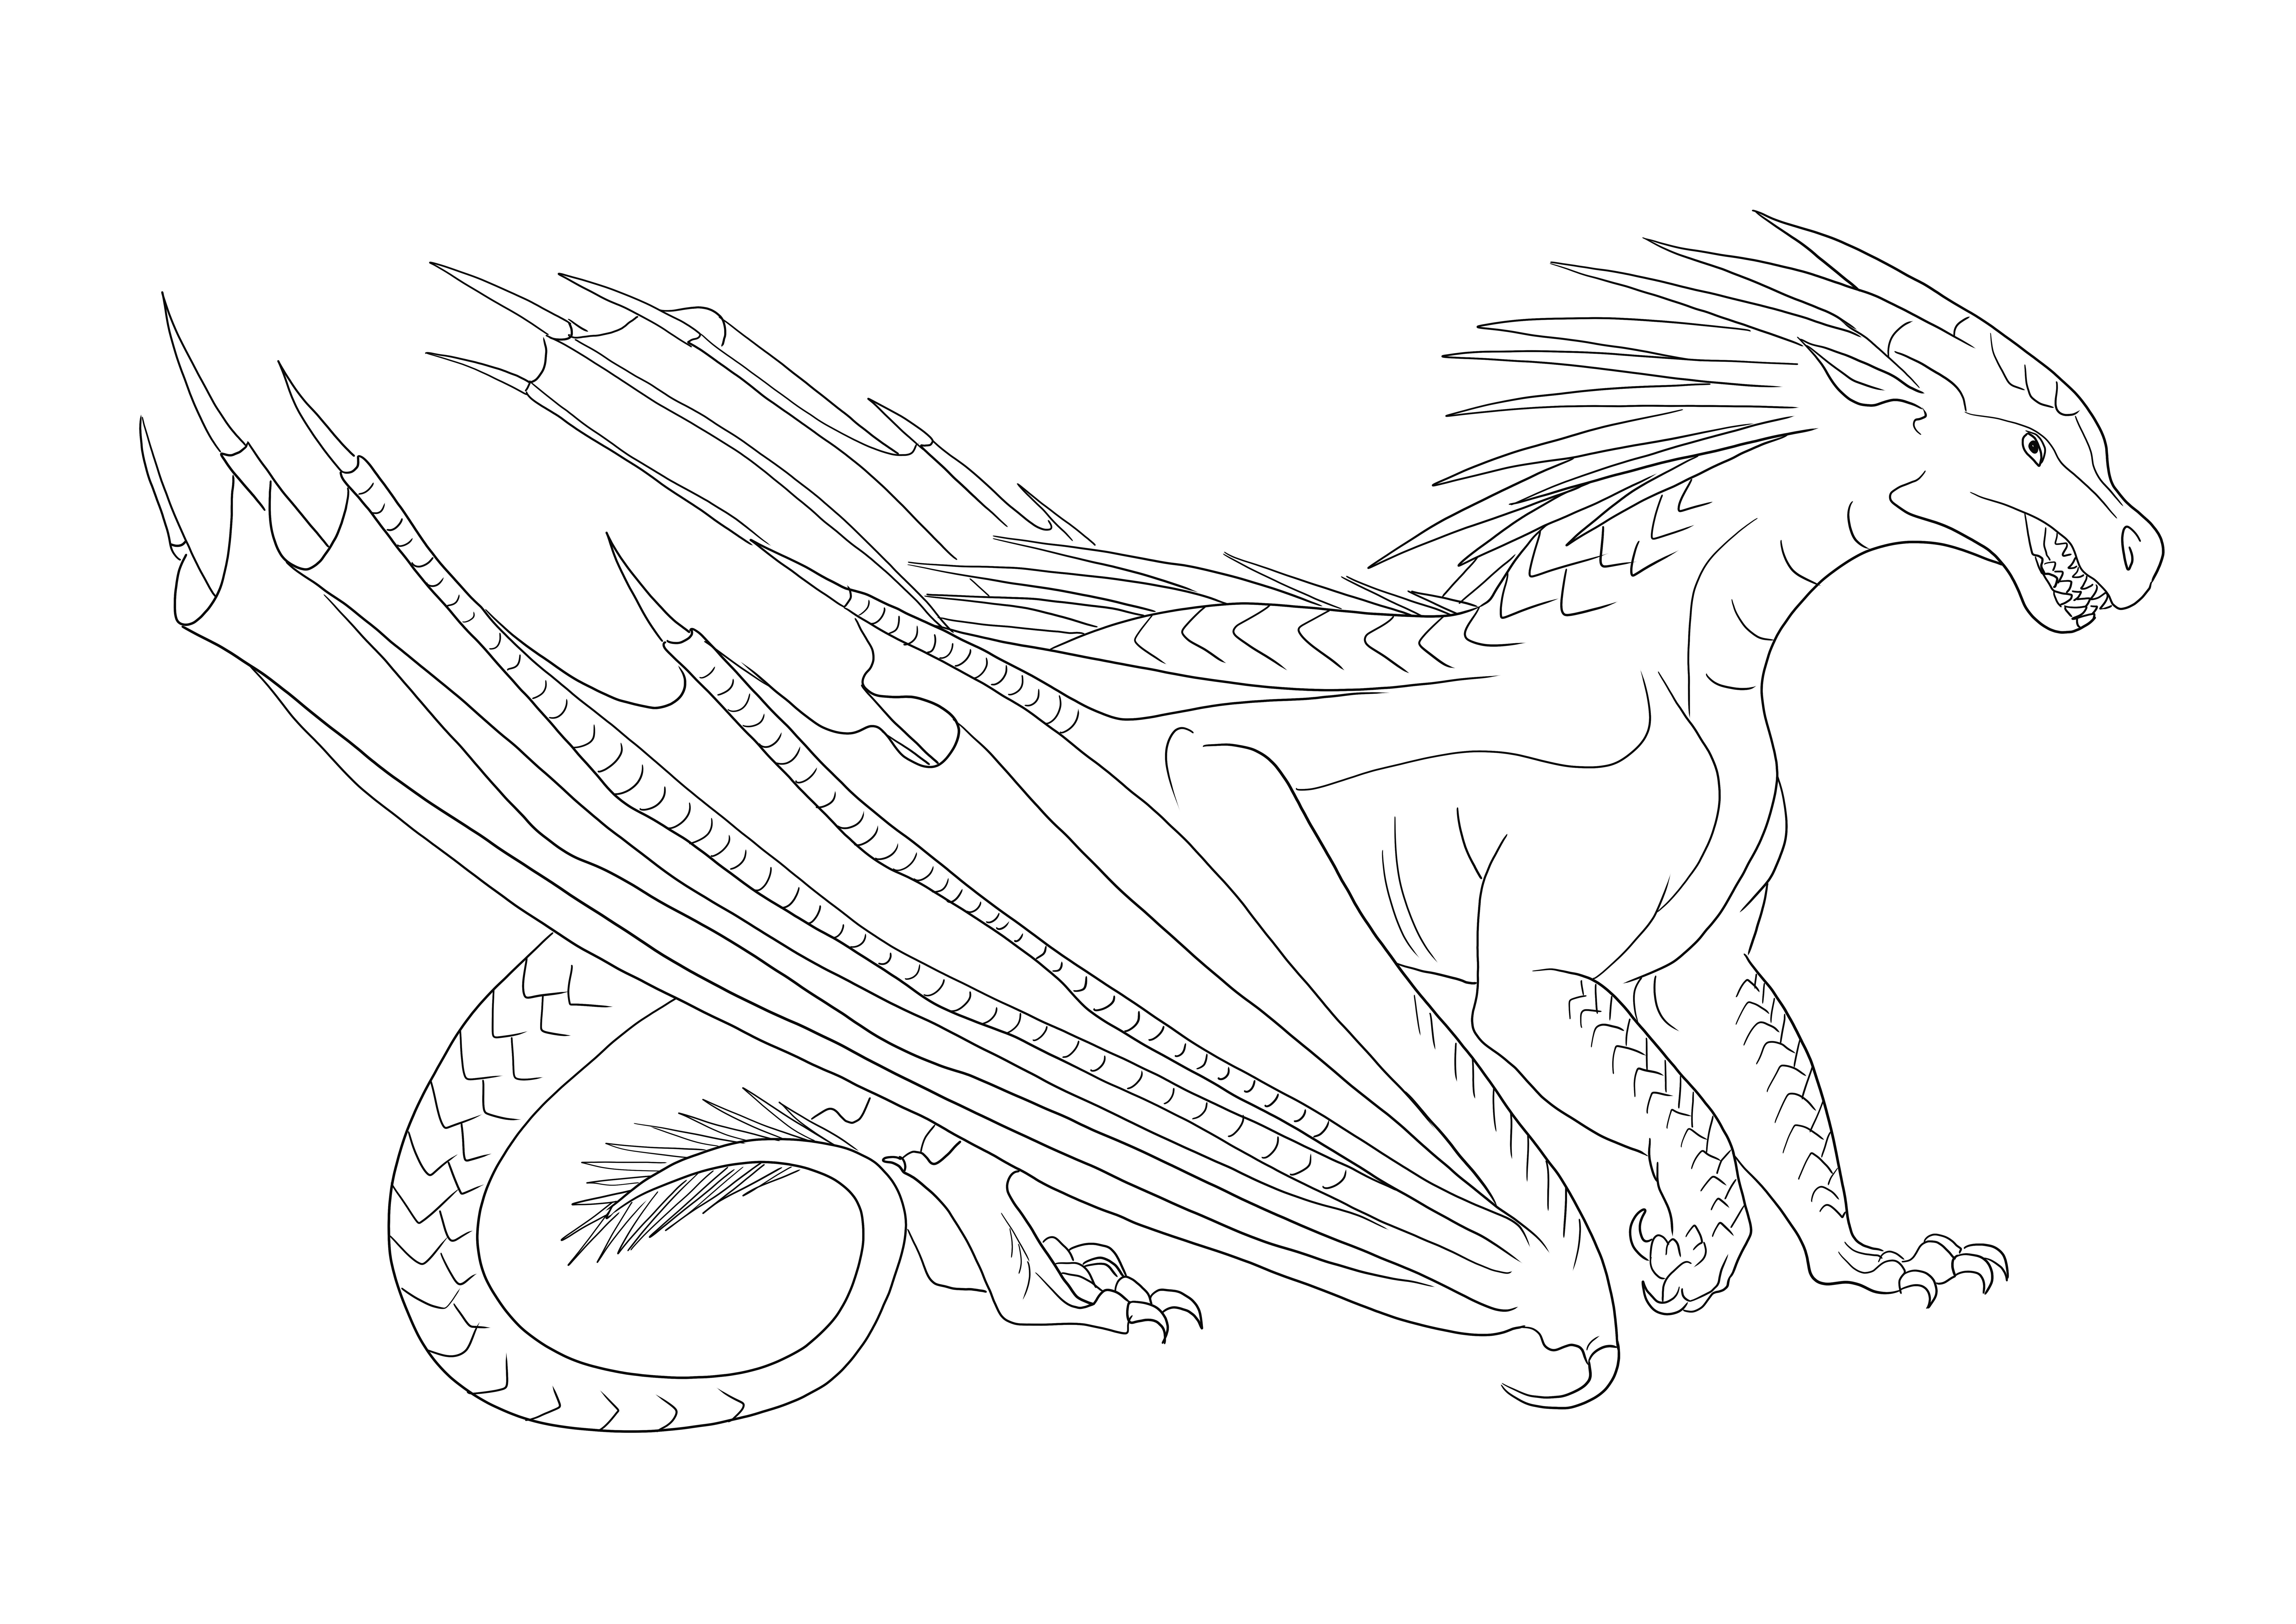 Icewing Dragon from Wings of Fire kleurplaat om gratis te printen kleurplaat